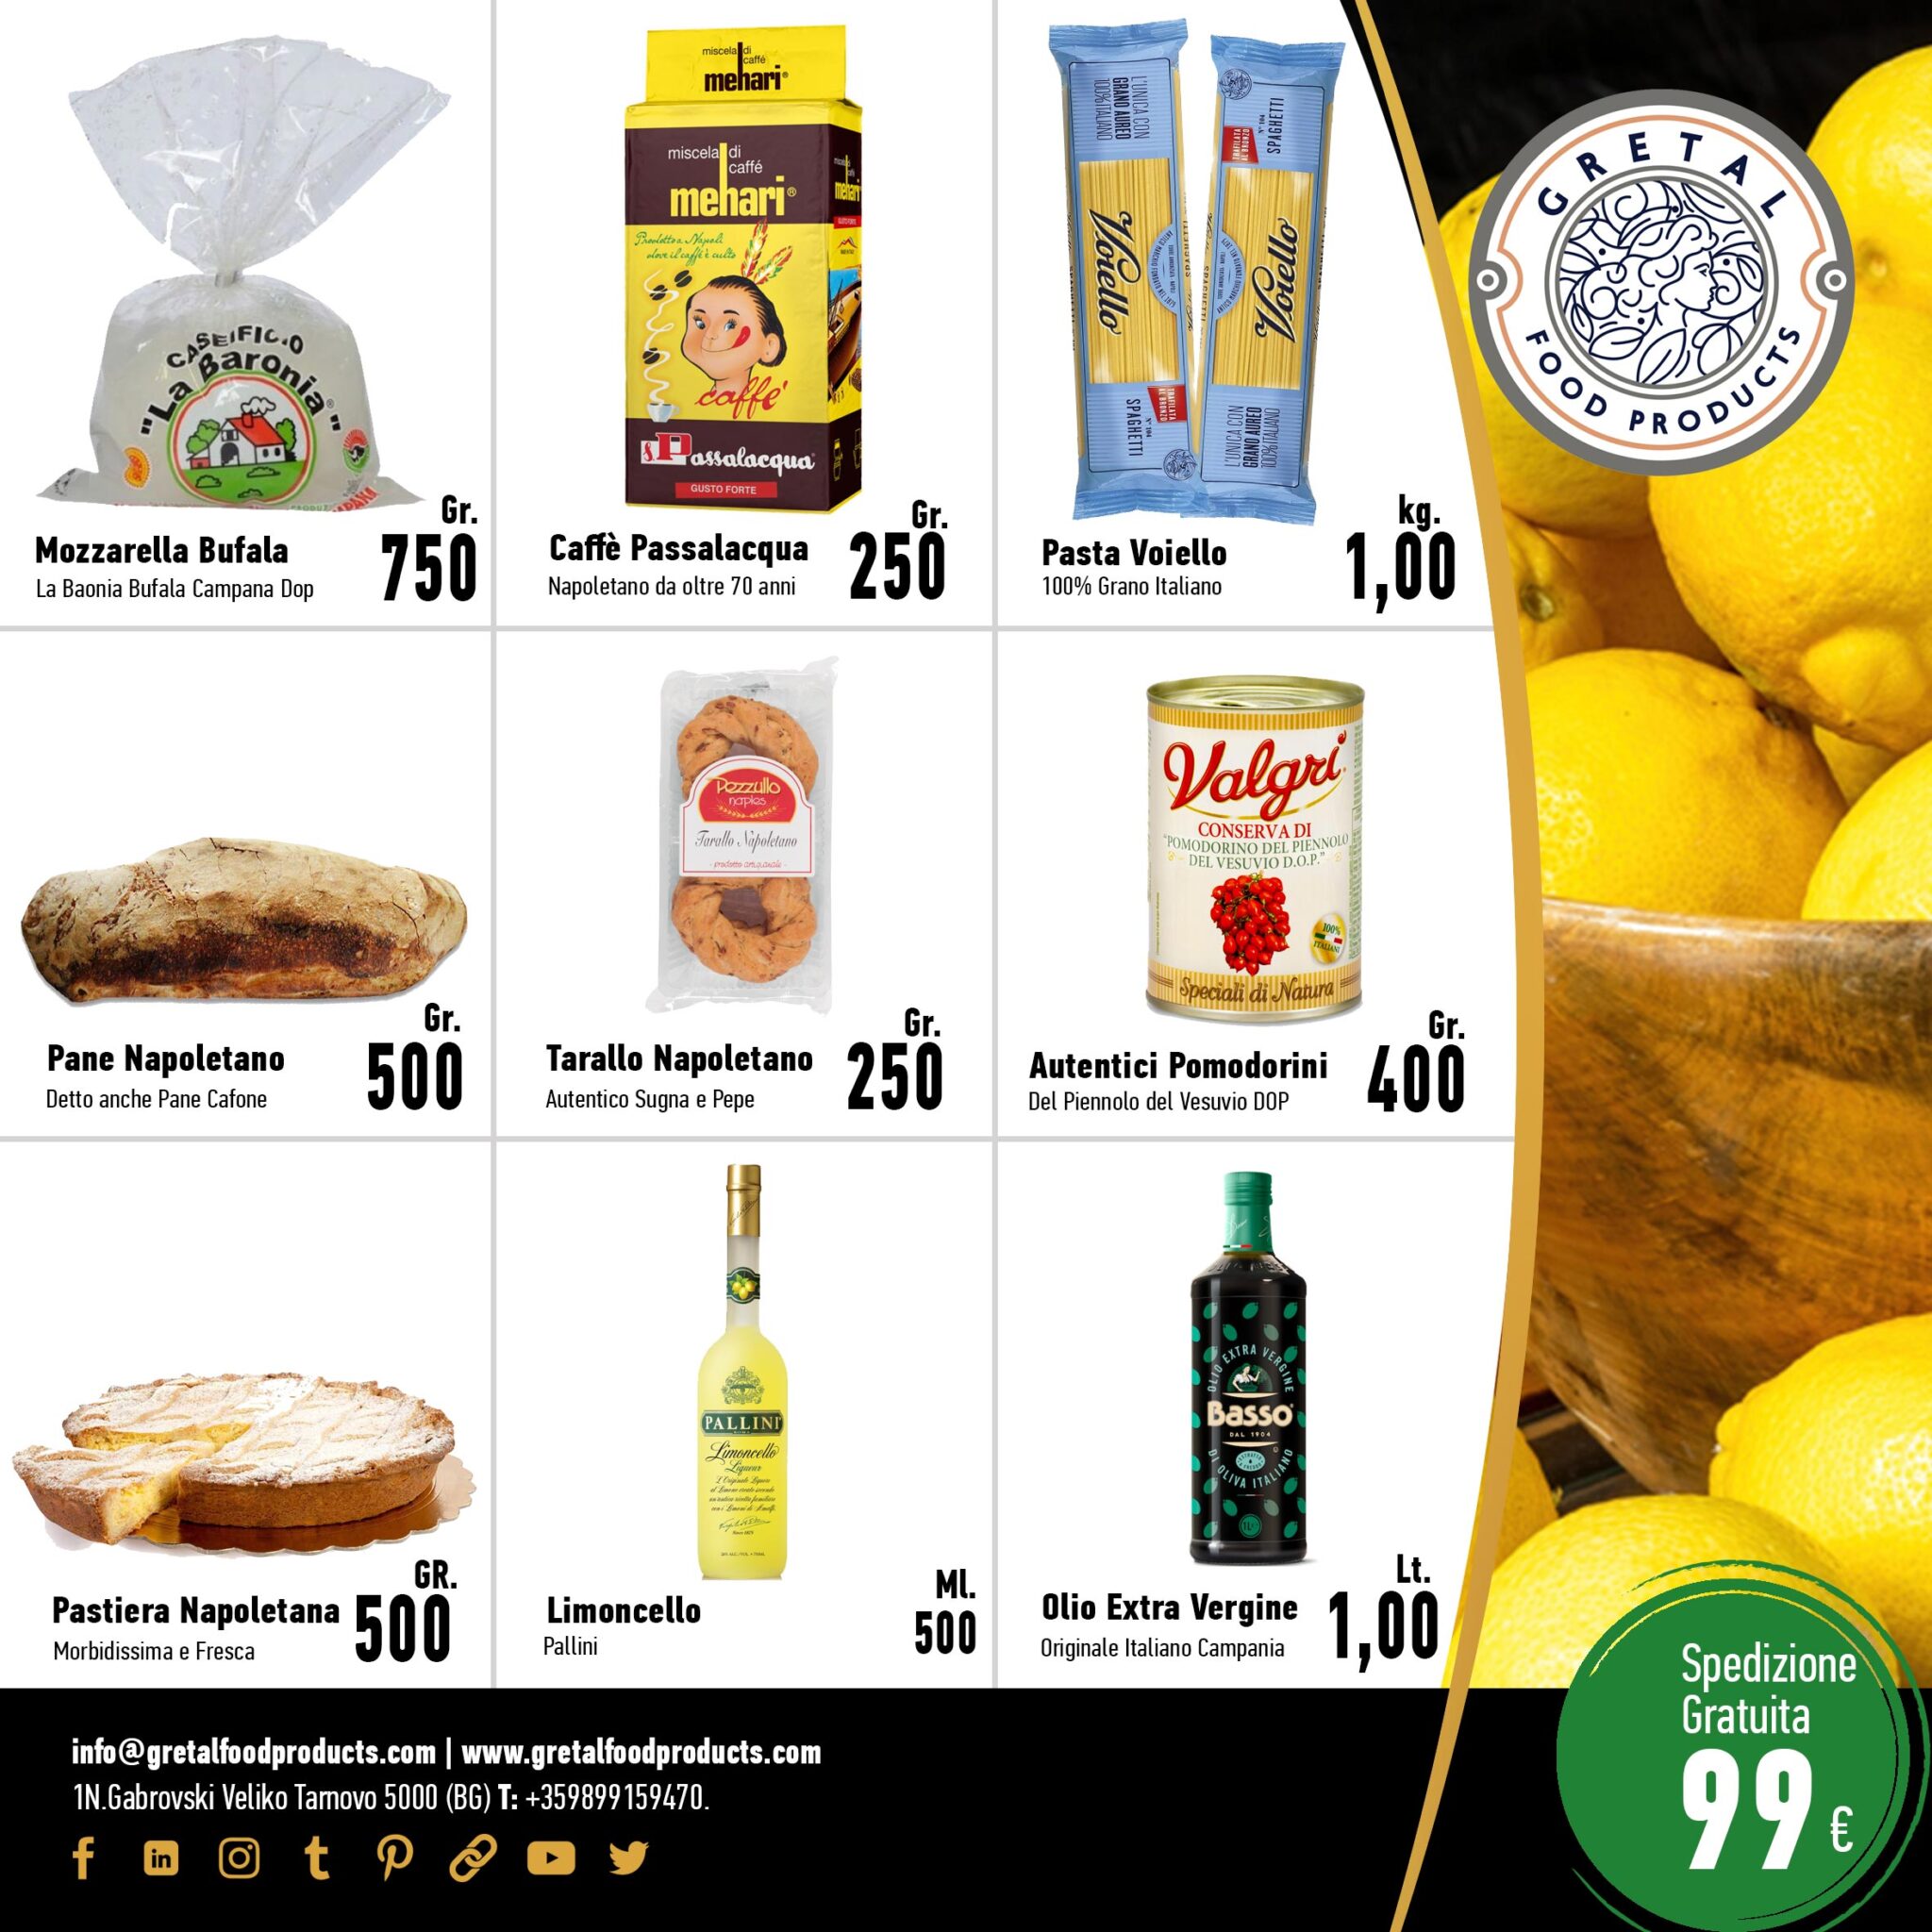 Gift-baskets-Italian-Food-Gourmet-Gretal-Food-Products-99